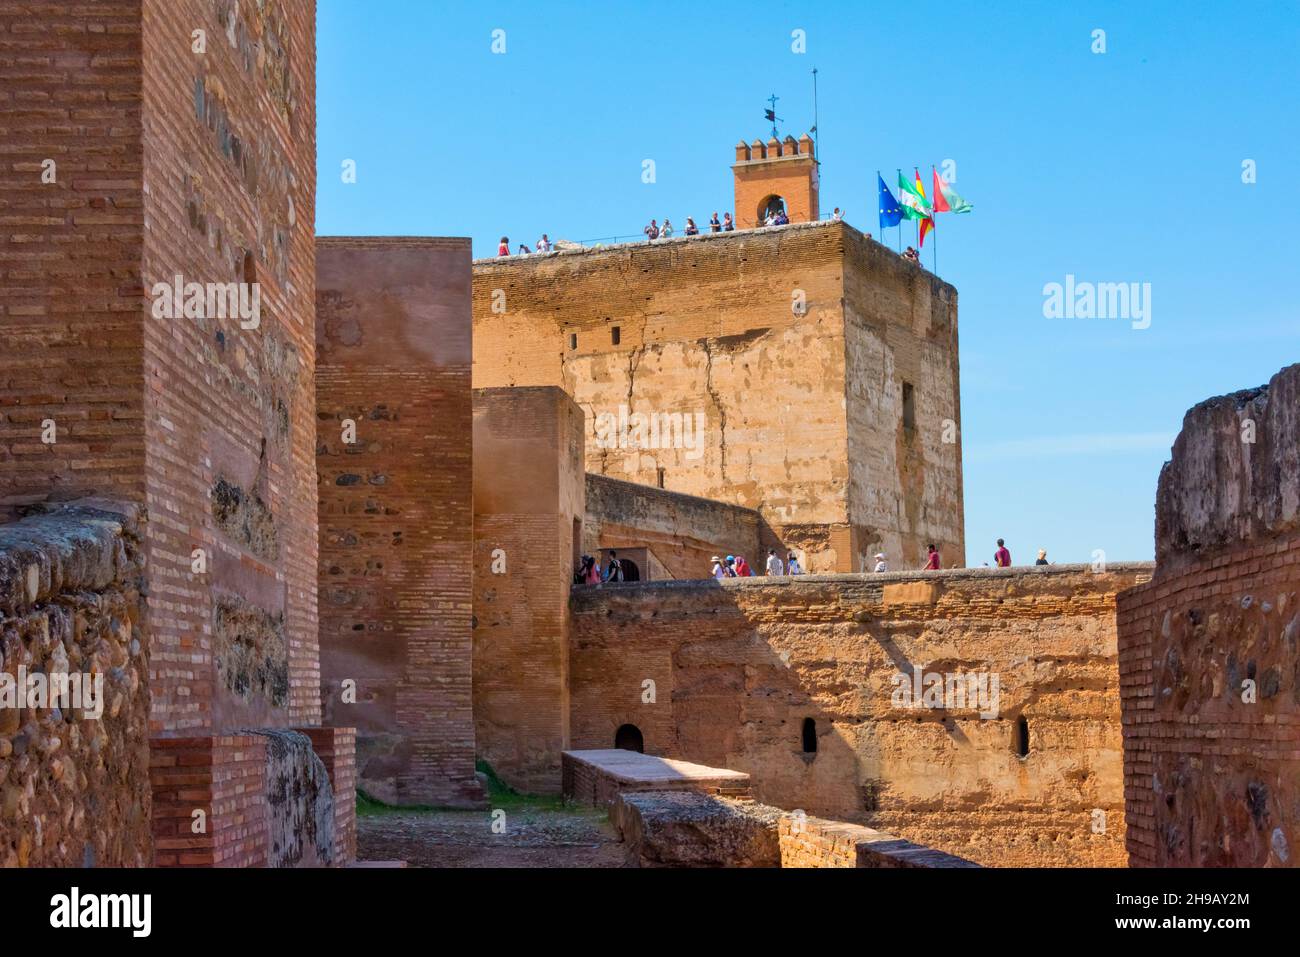 L'Alcazaba, tours de forteresse et murs extérieurs de l'Alhambra, Grenade, province de Grenade, Communauté autonome d'Andalousie, Espagne Banque D'Images